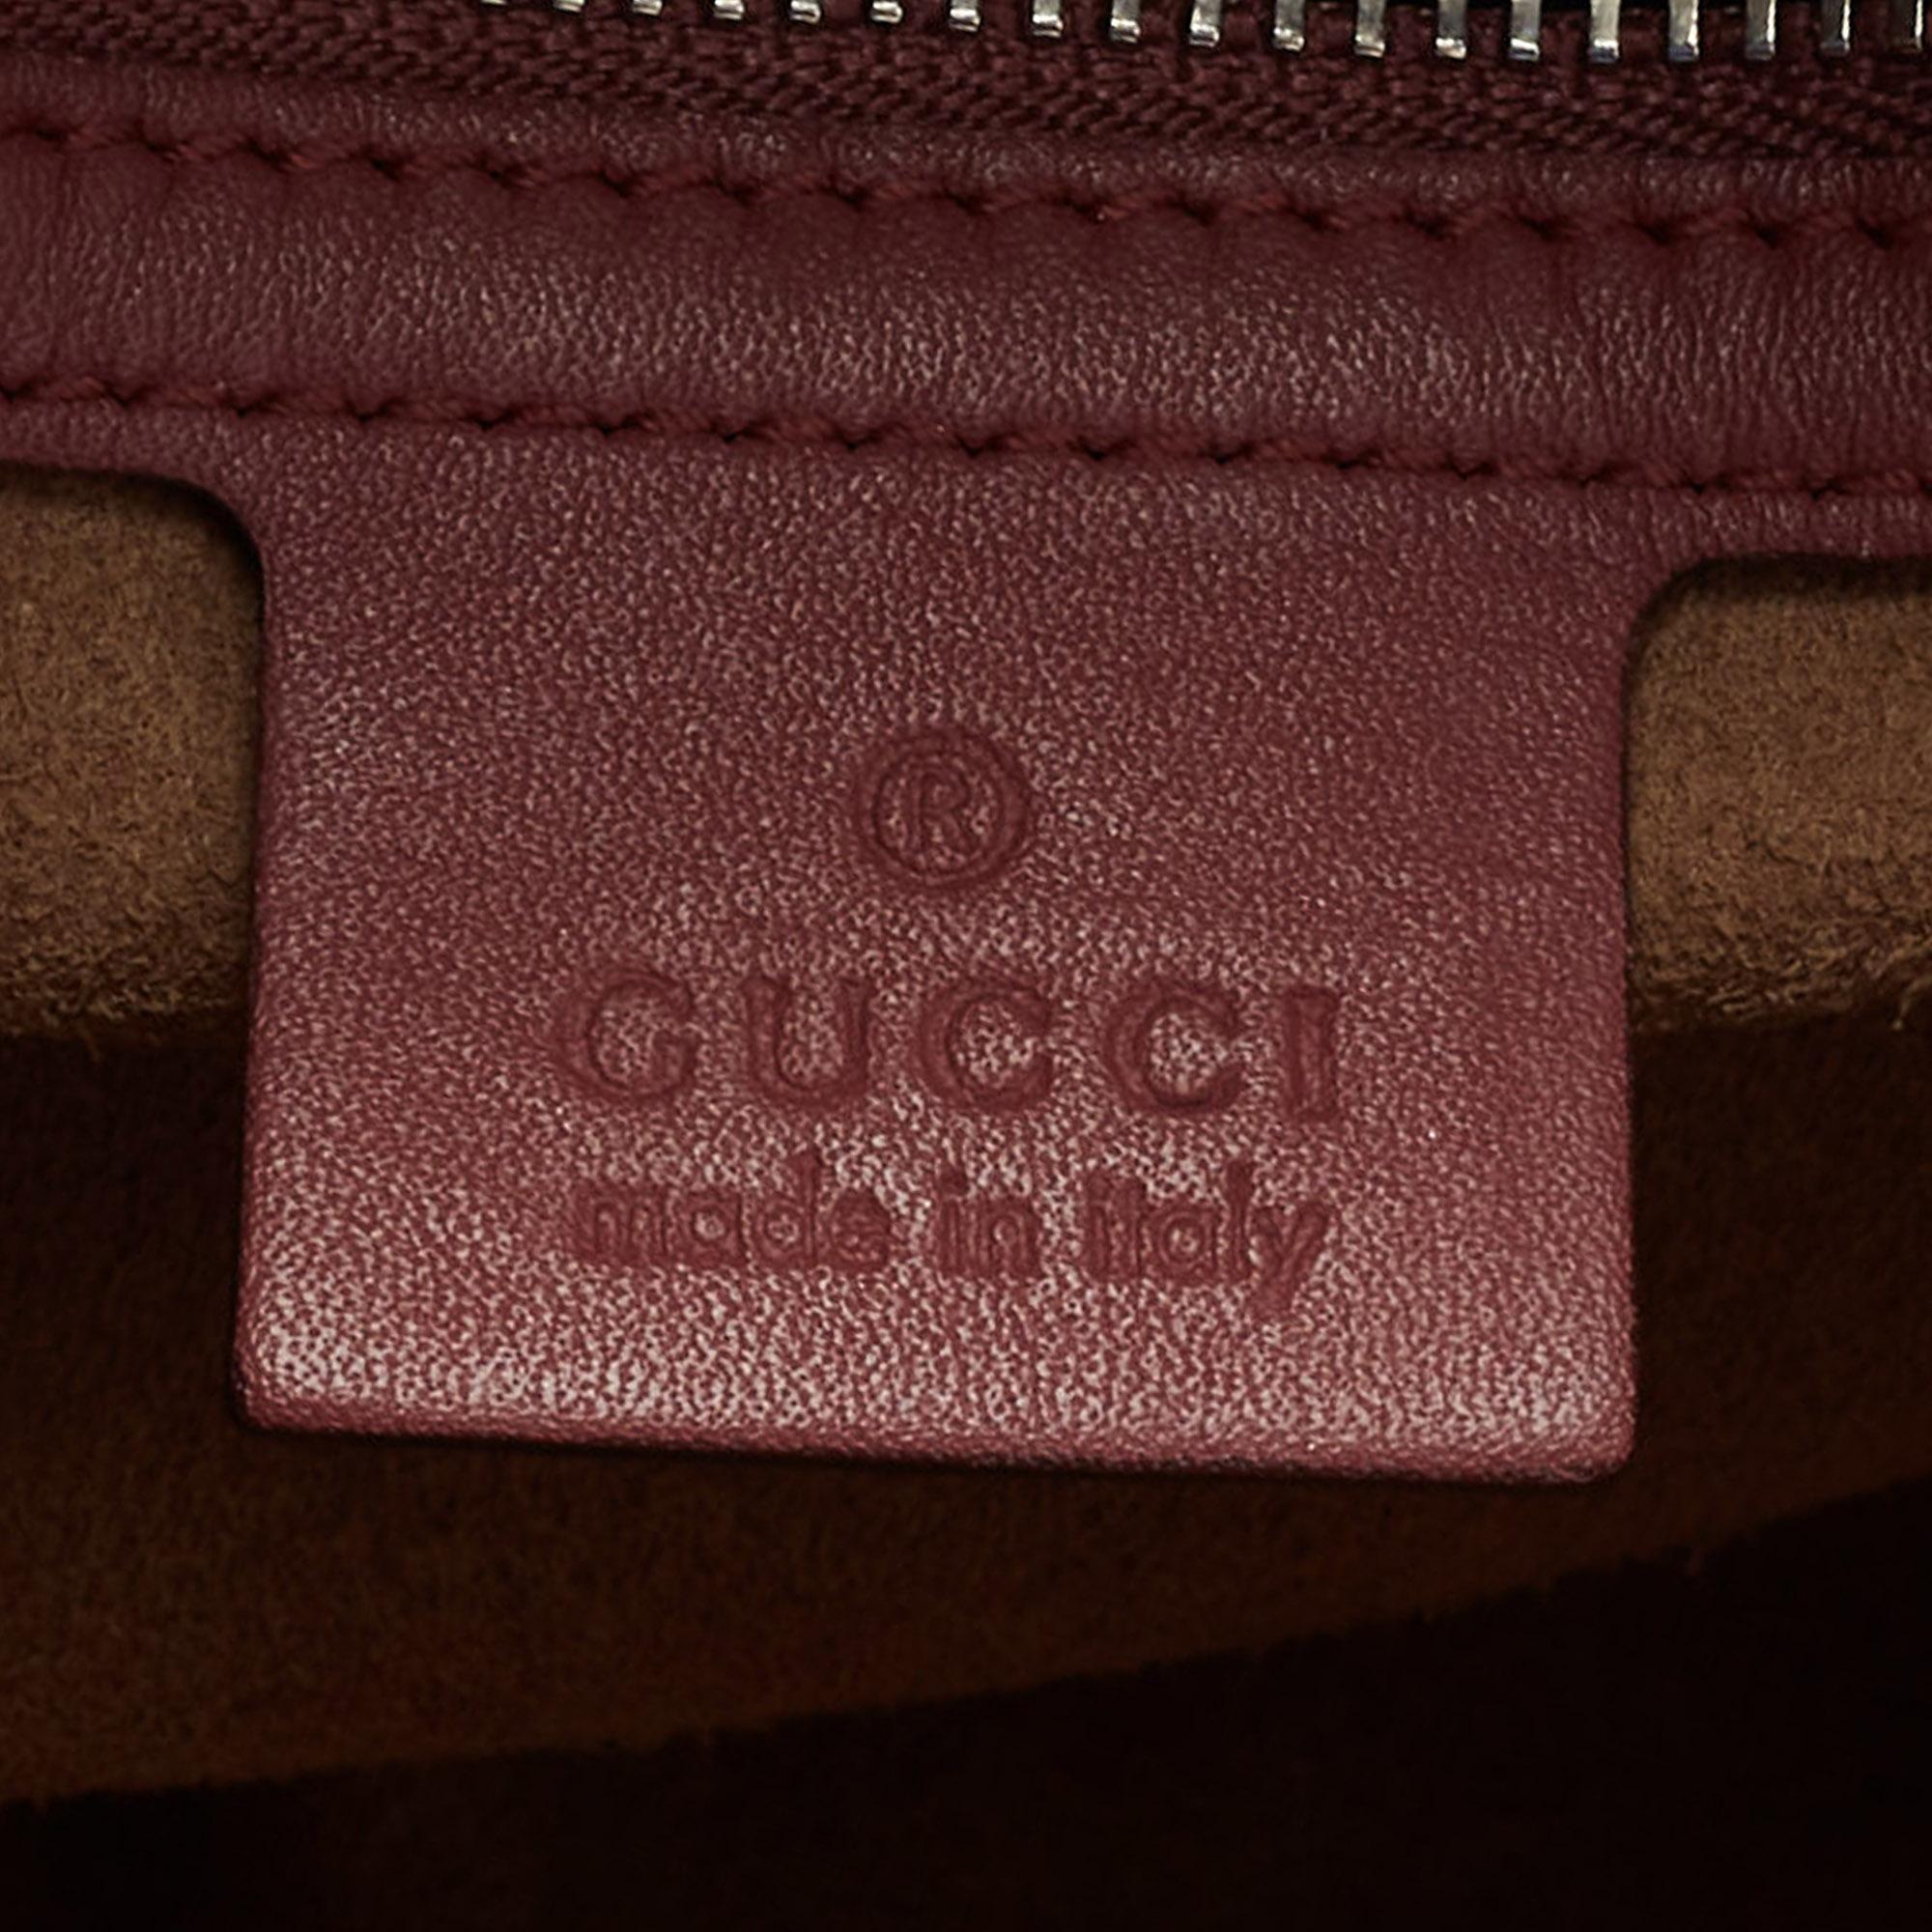 Gucci Multicolor GG Supreme Blooms Canvas And Leather Boston Bag 2